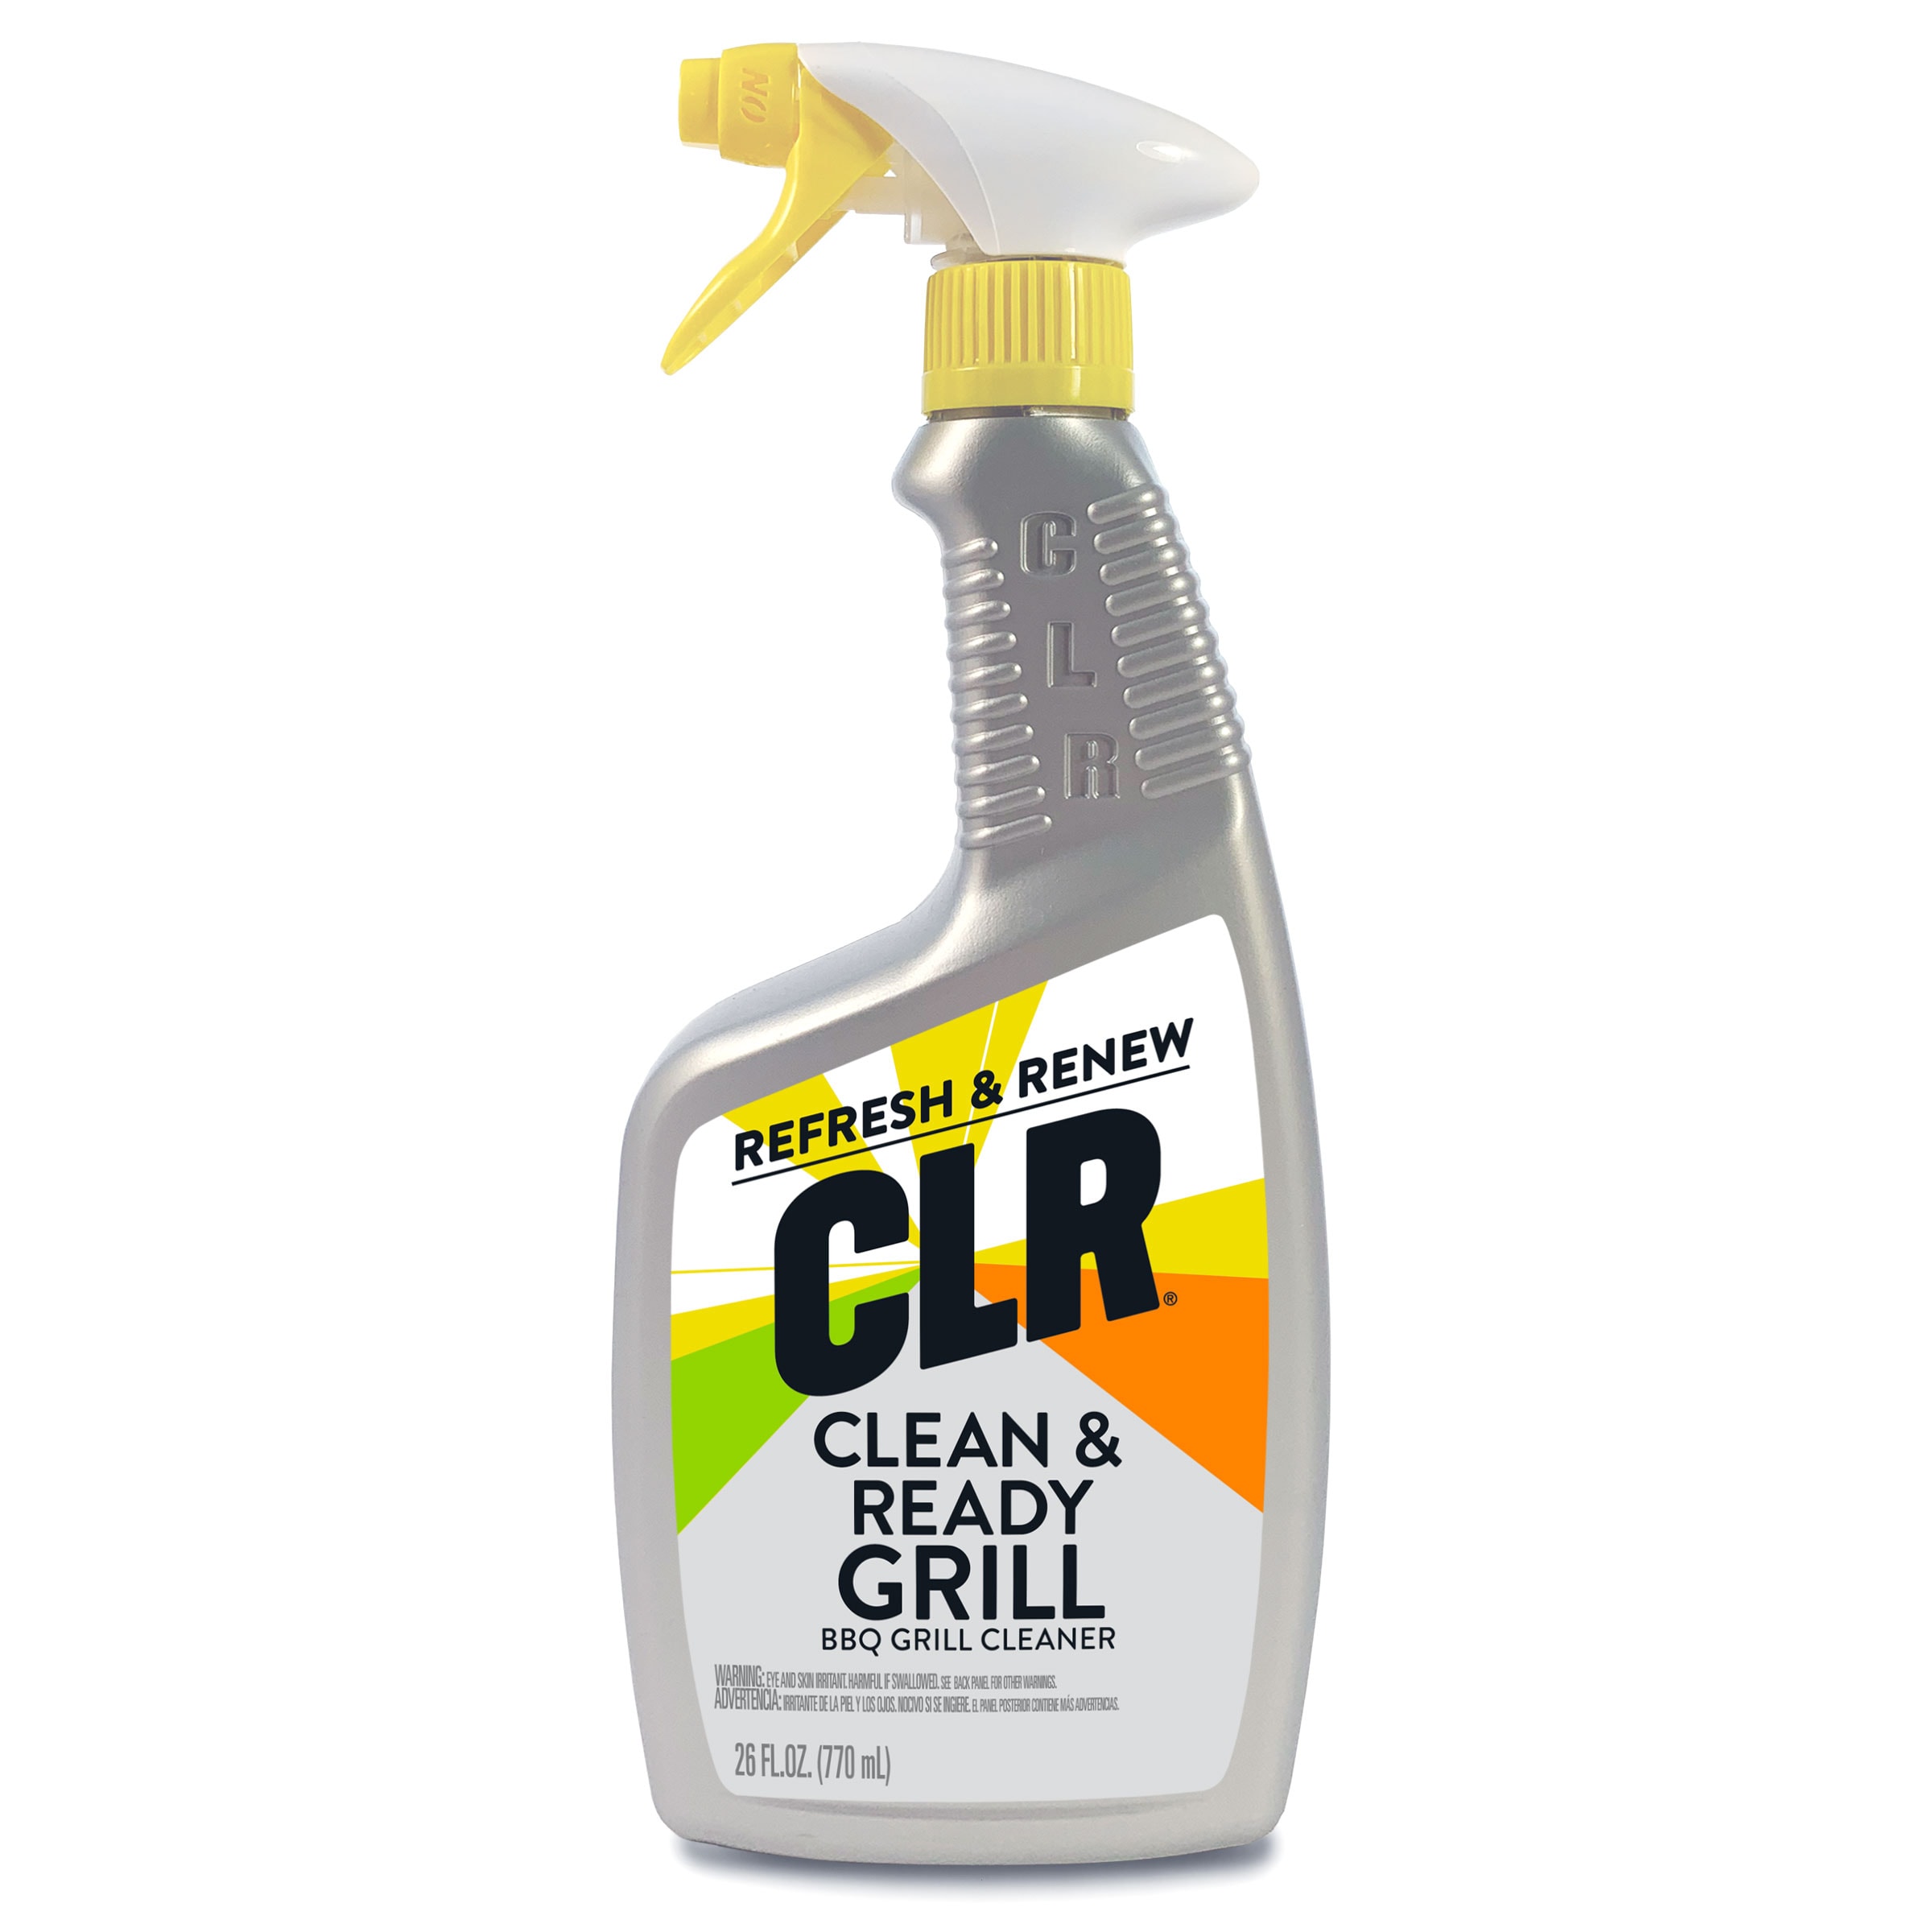 Citrusafe BBQ Grid & Grill Cleaner - 23 oz bottle